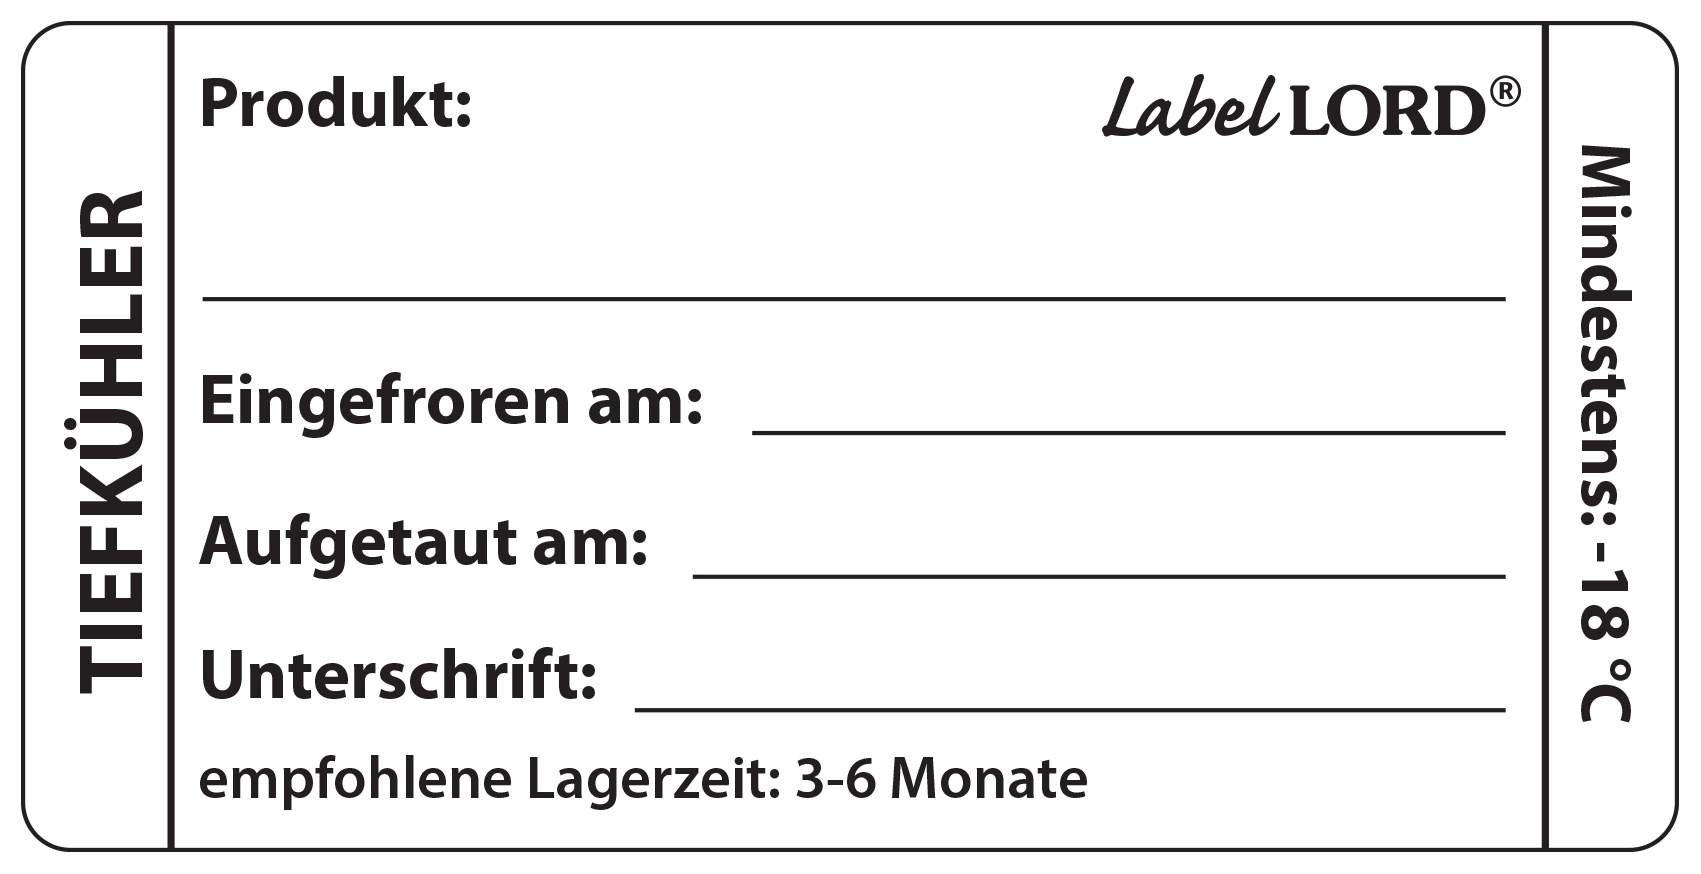 Labellord HACCP Etiketten Tiefkühler R100, 250 Stück